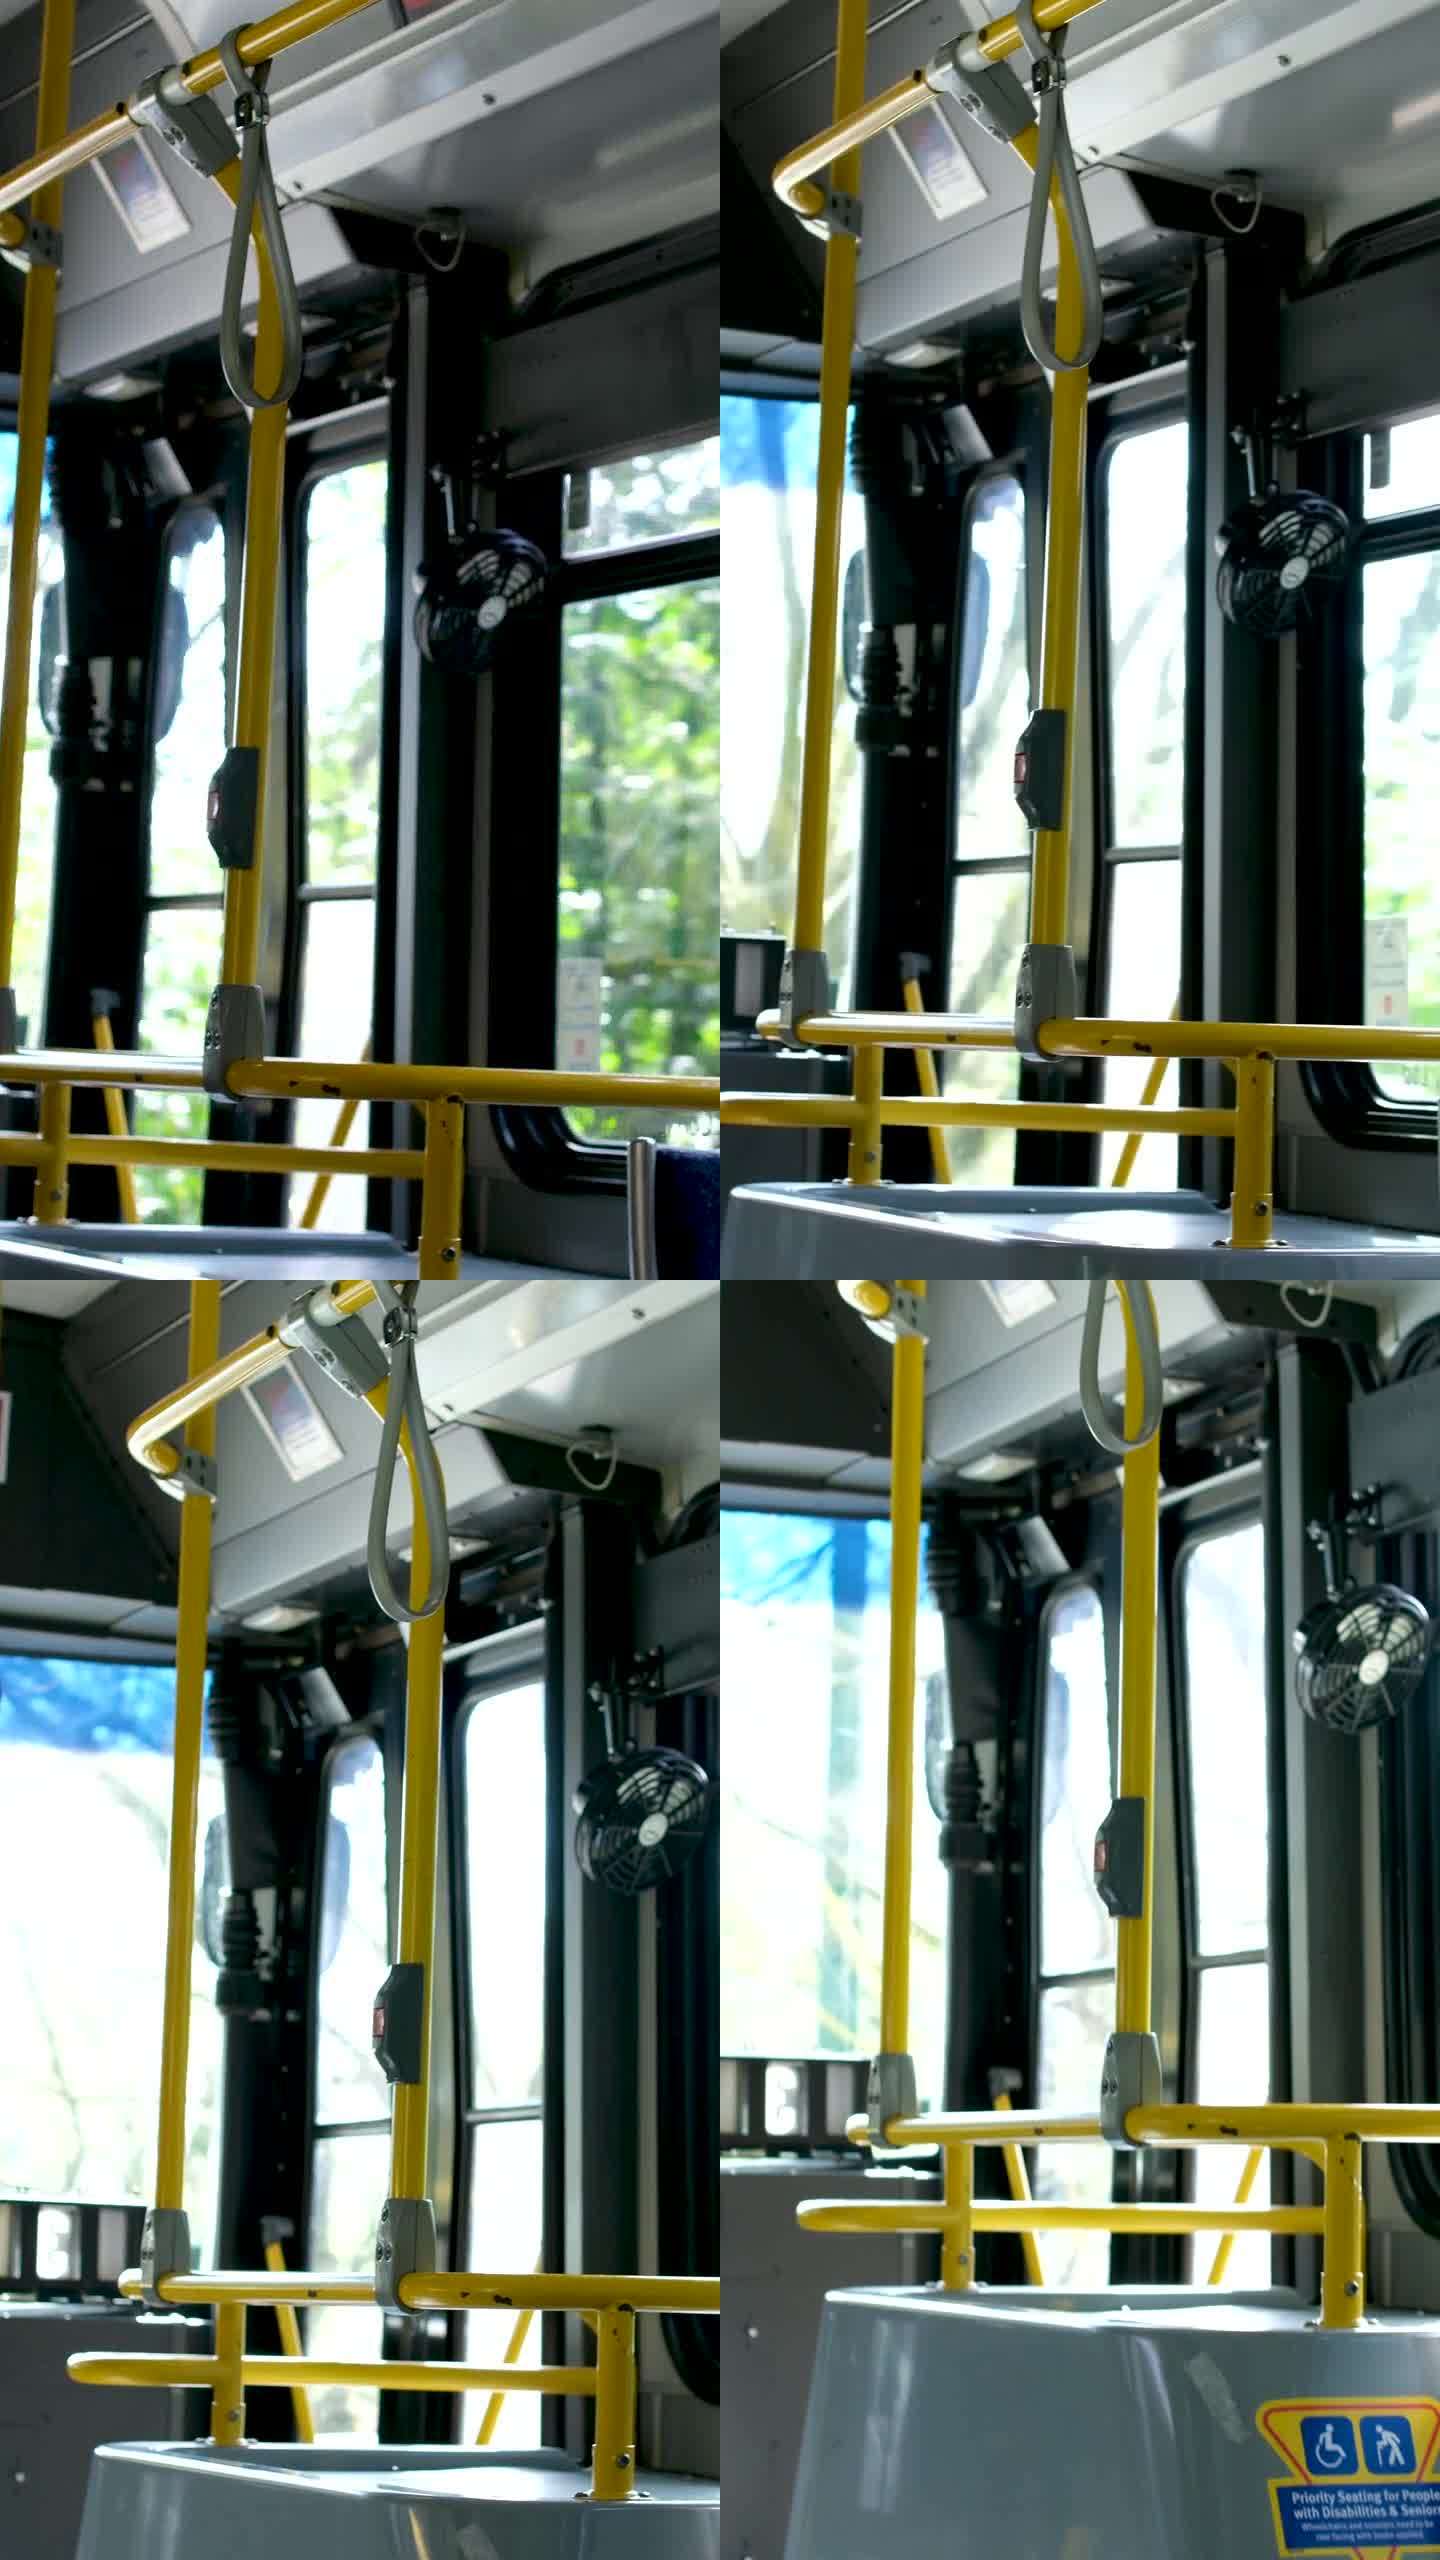 加拿大温哥华市，BC市，换乘巴士内的水龙头坏了，因为巴士是免费的，前排座位是给残疾人的，折叠座位是空